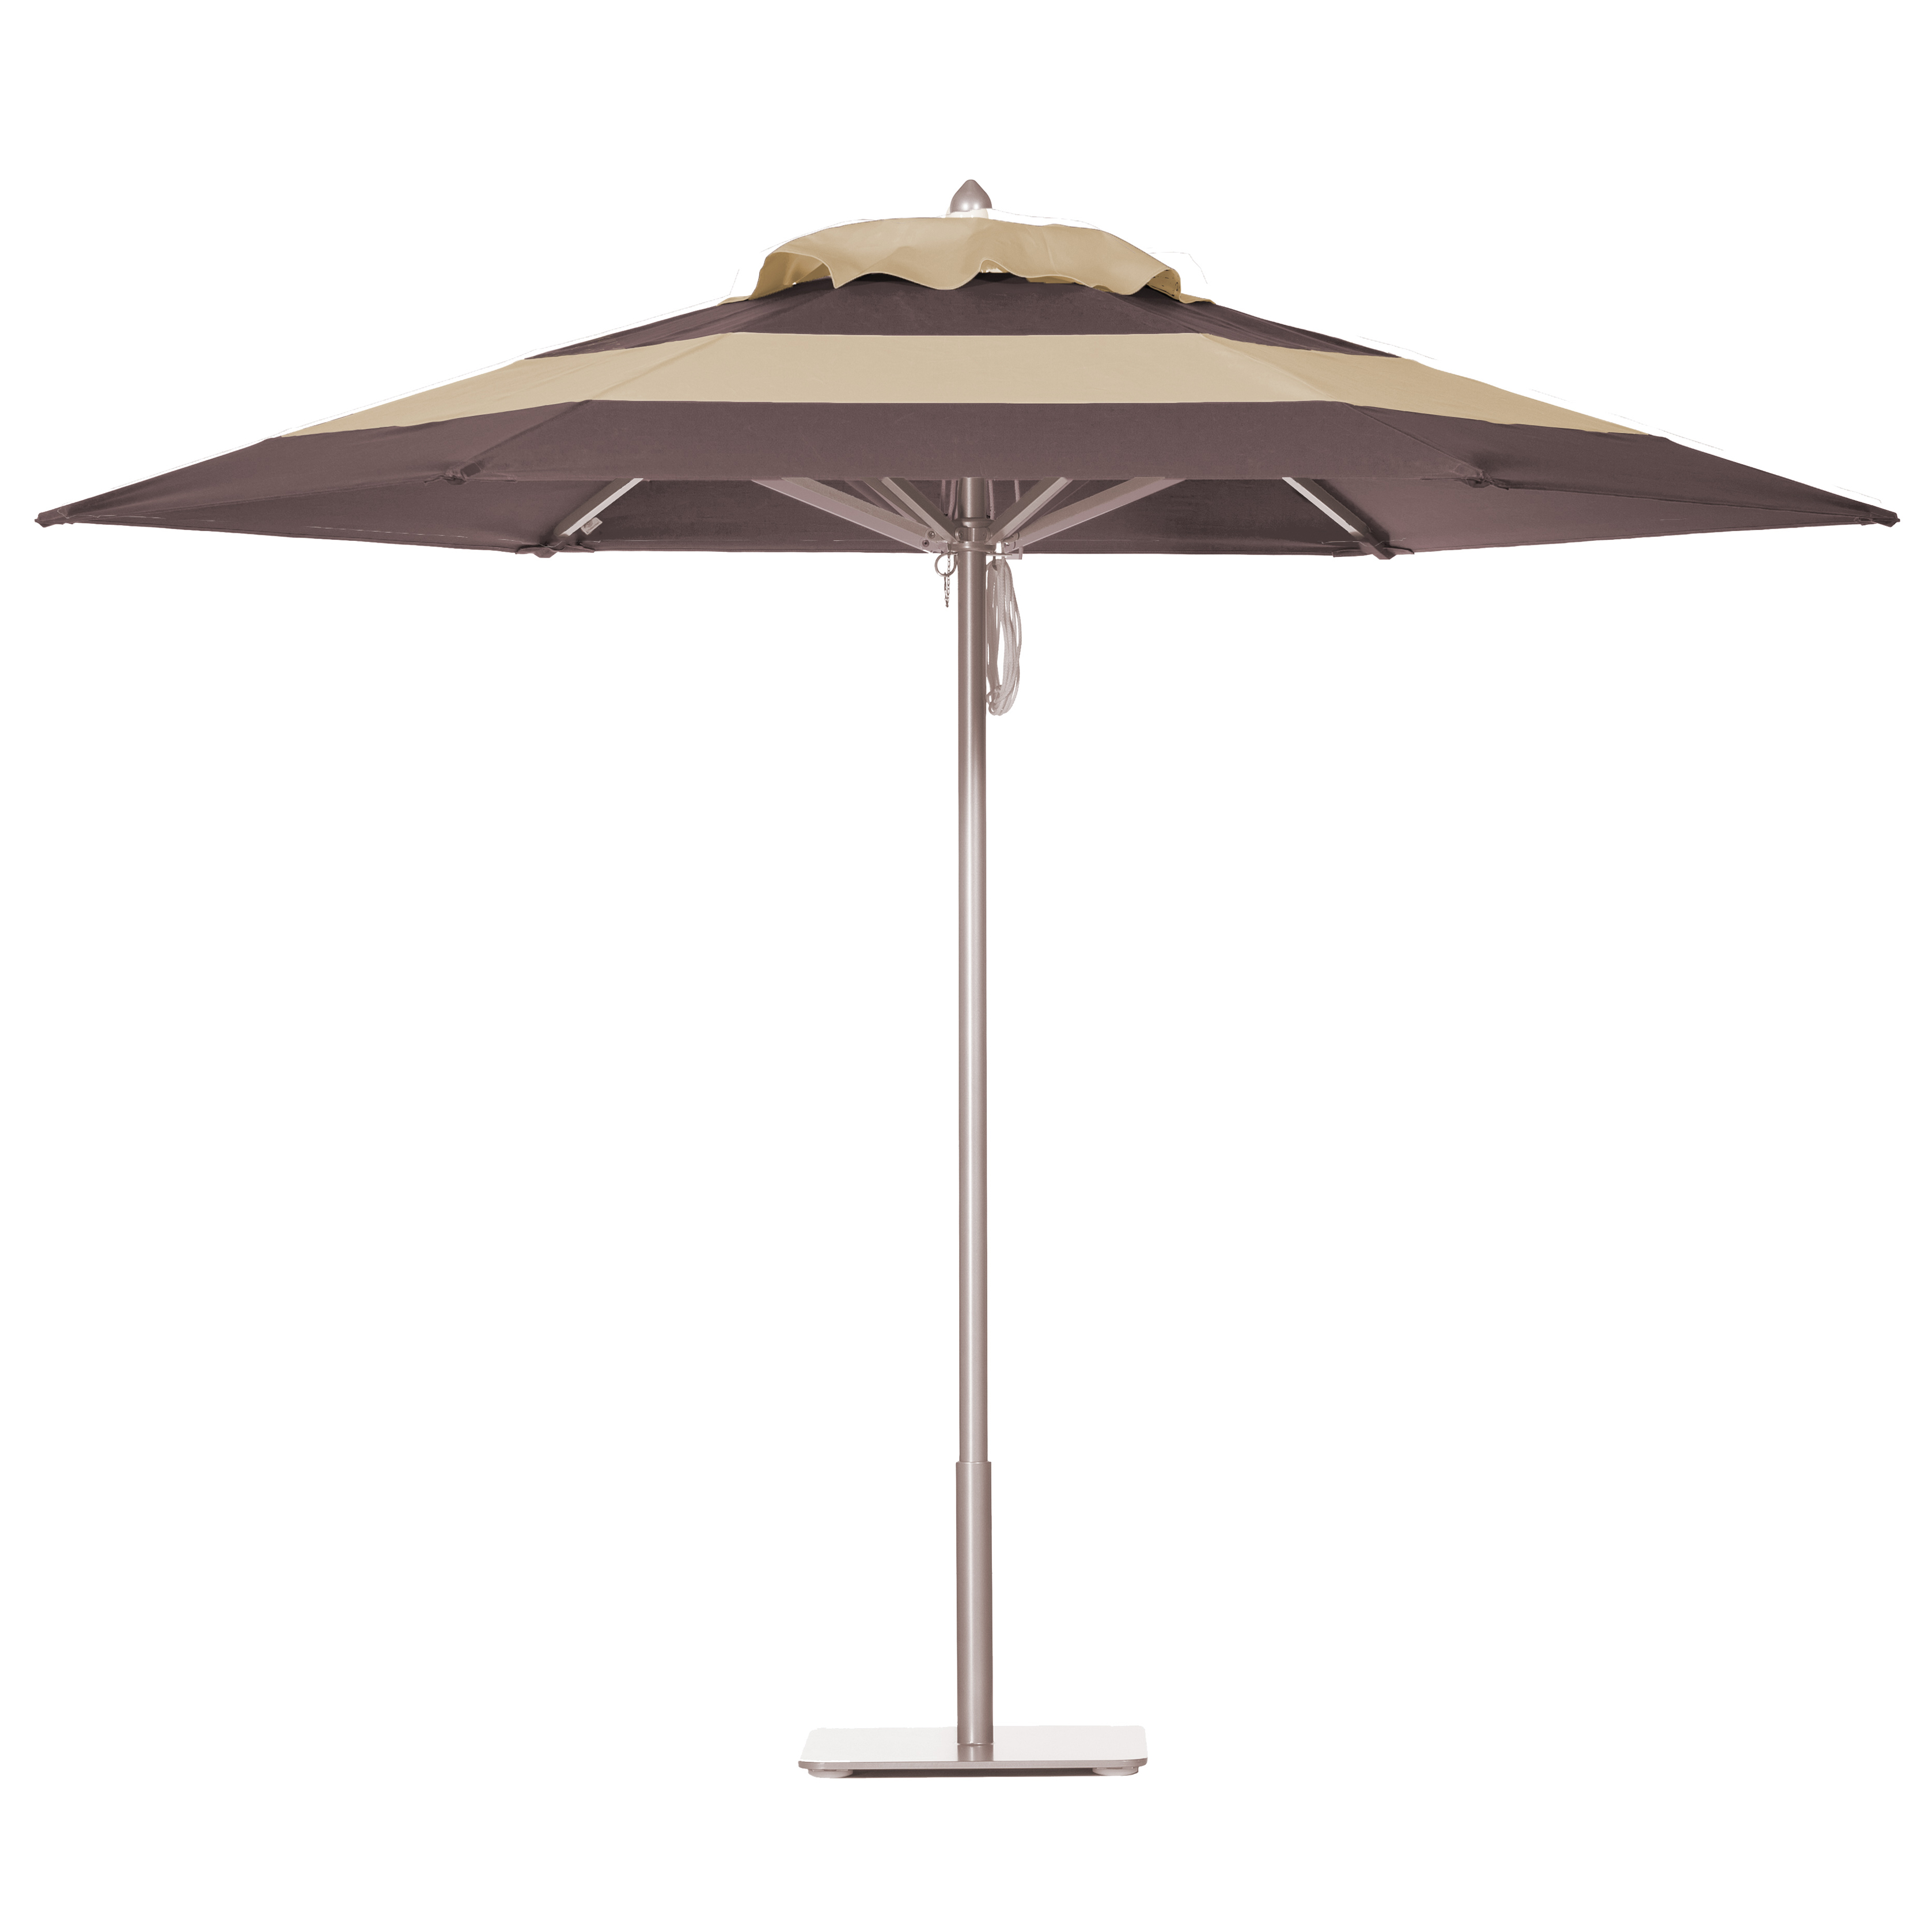 Espresso & Biscuit Umbrella Image